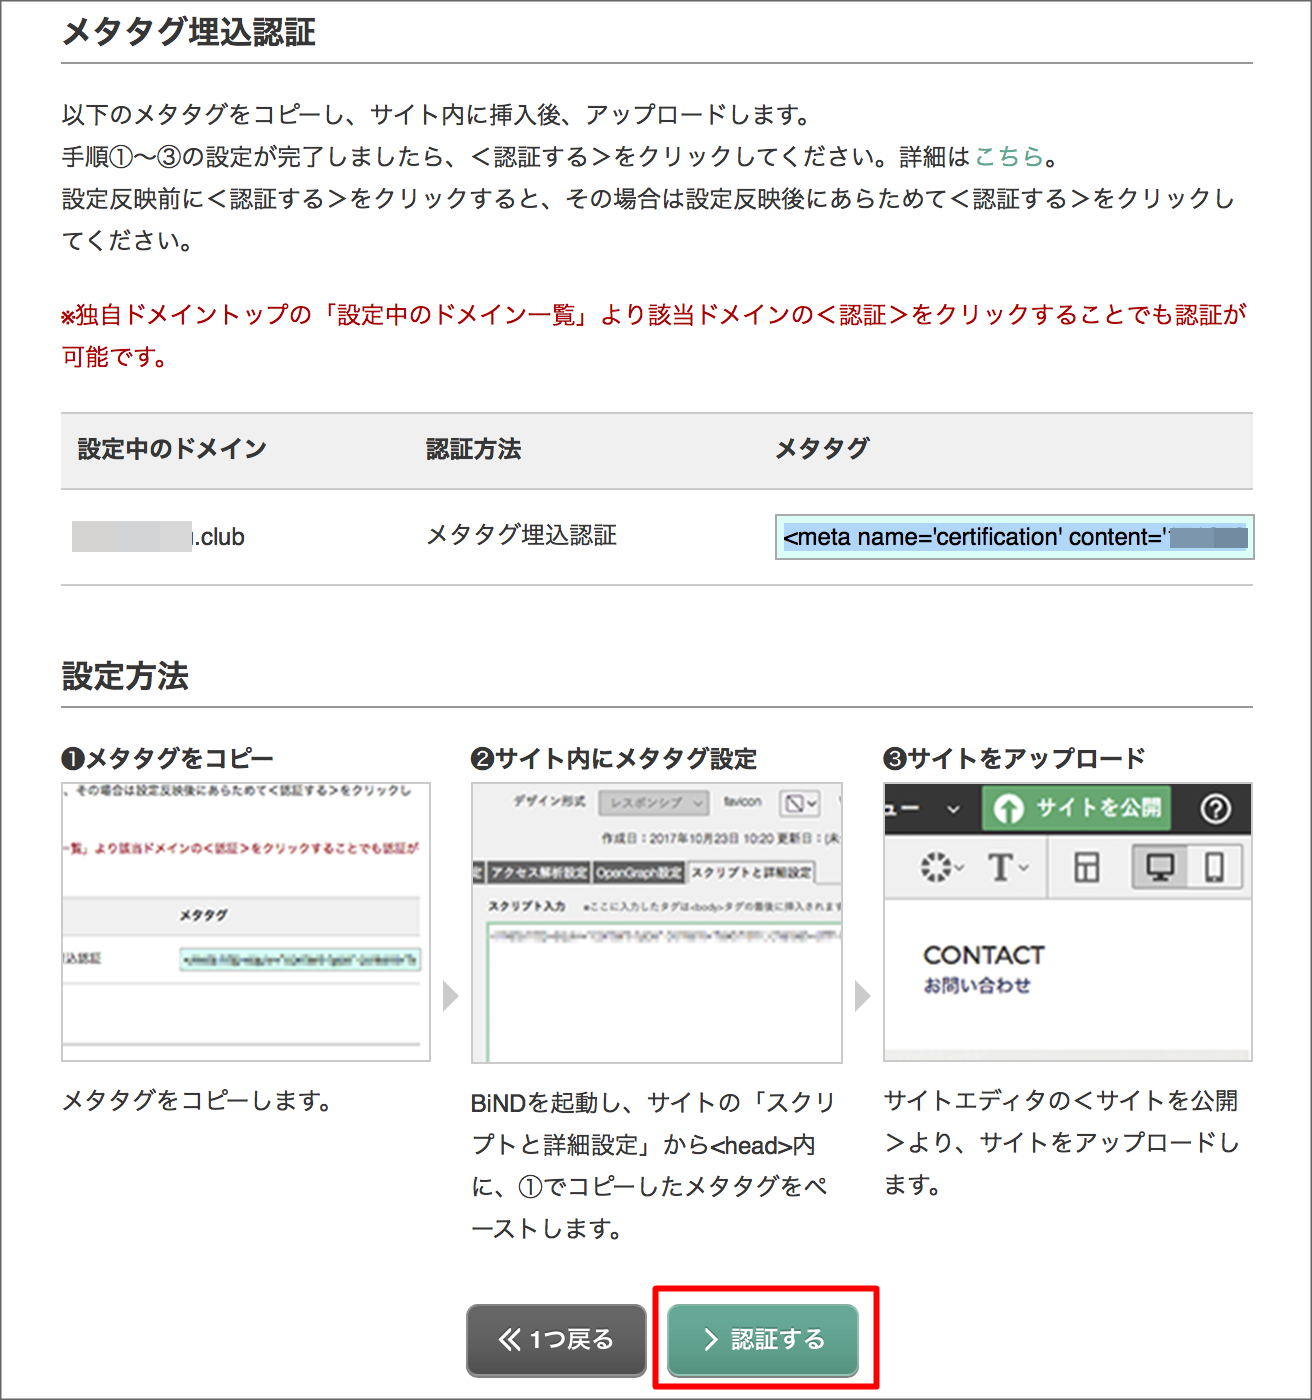 http://www.digitalstage.jp/support/weblife/manual/02-05-16_005.png